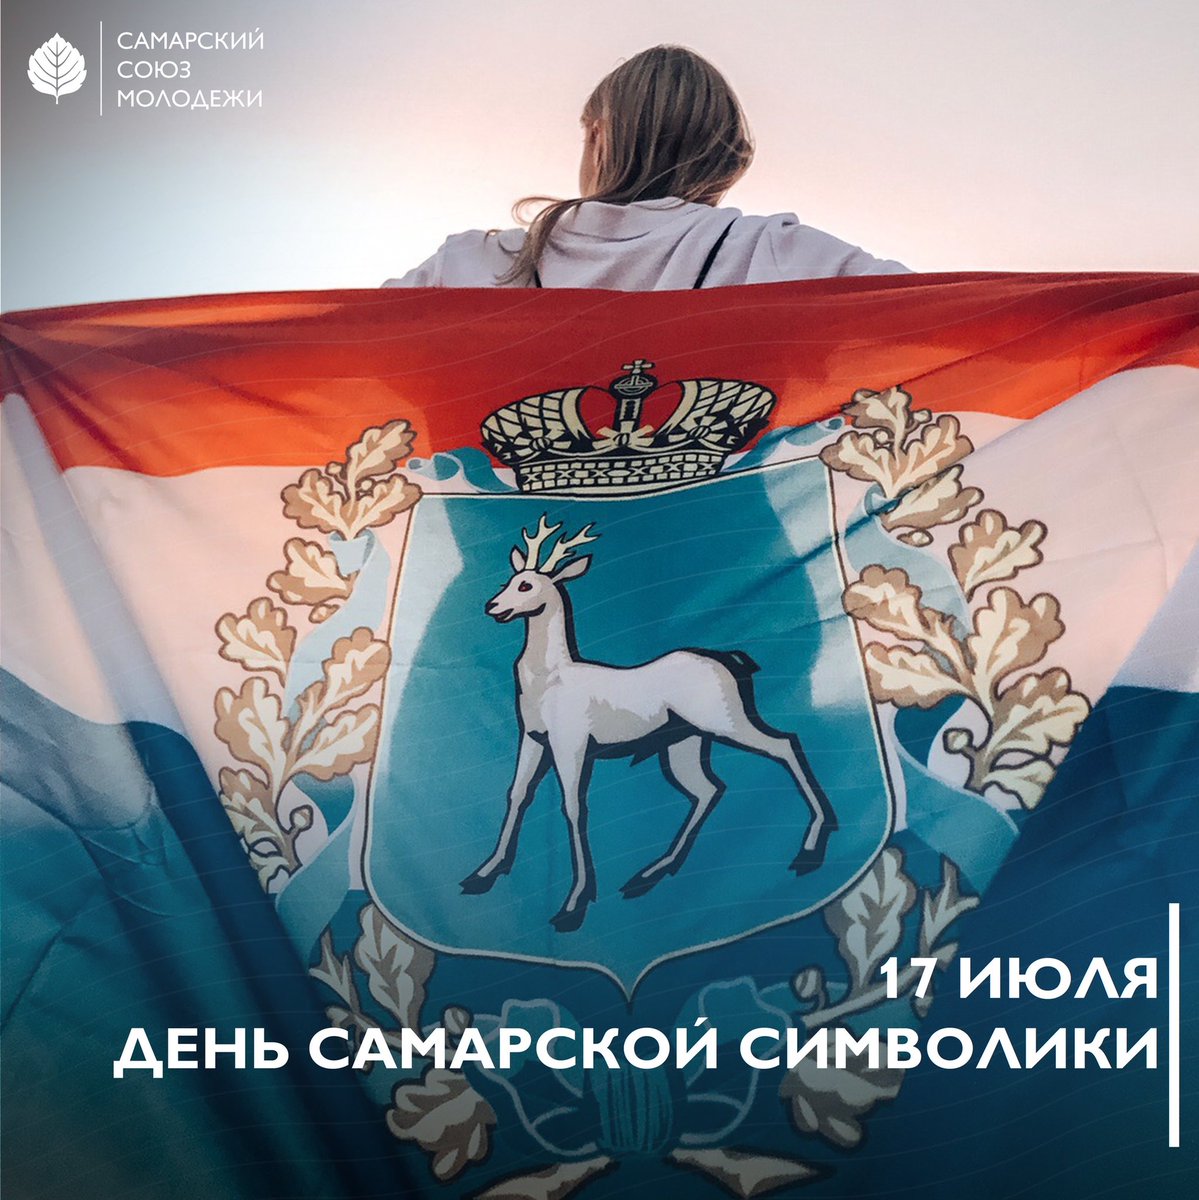 17 июля – День Самарской символики 142 года назад был утверждён герб нашей губернии. Официальные символы города, порядок их использования и воспроизведения утверждены Думой городского округа Самара в 1998 году.